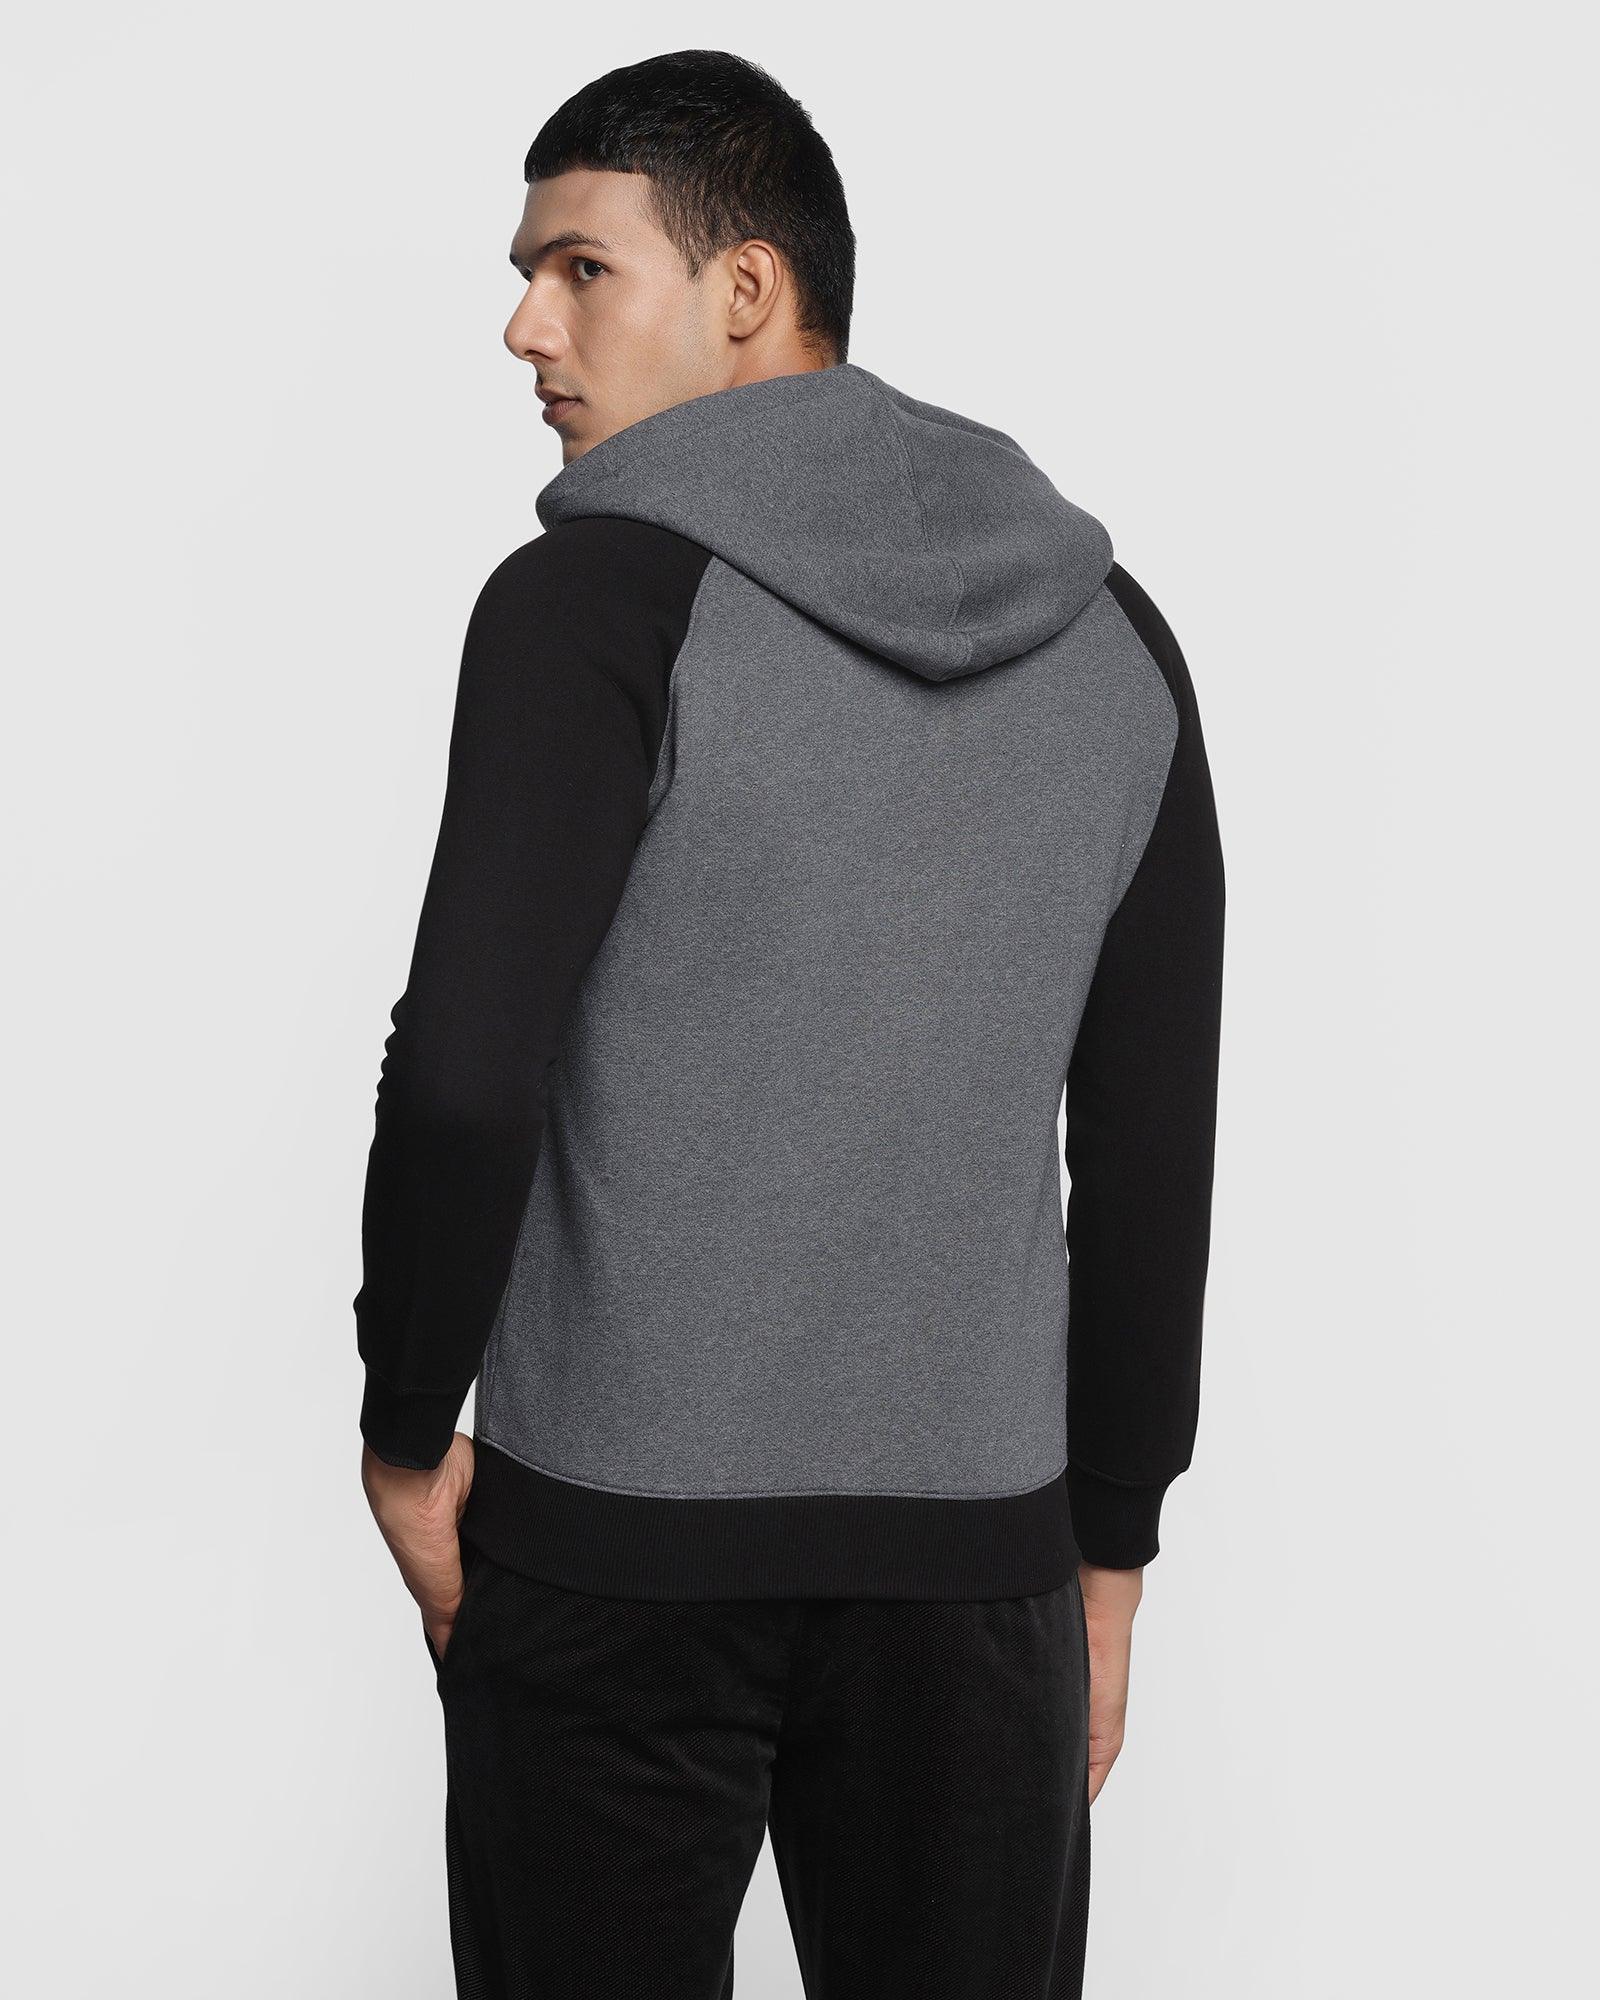 Hoodie Charcoal Melange Solid Sweatshirt - Rage